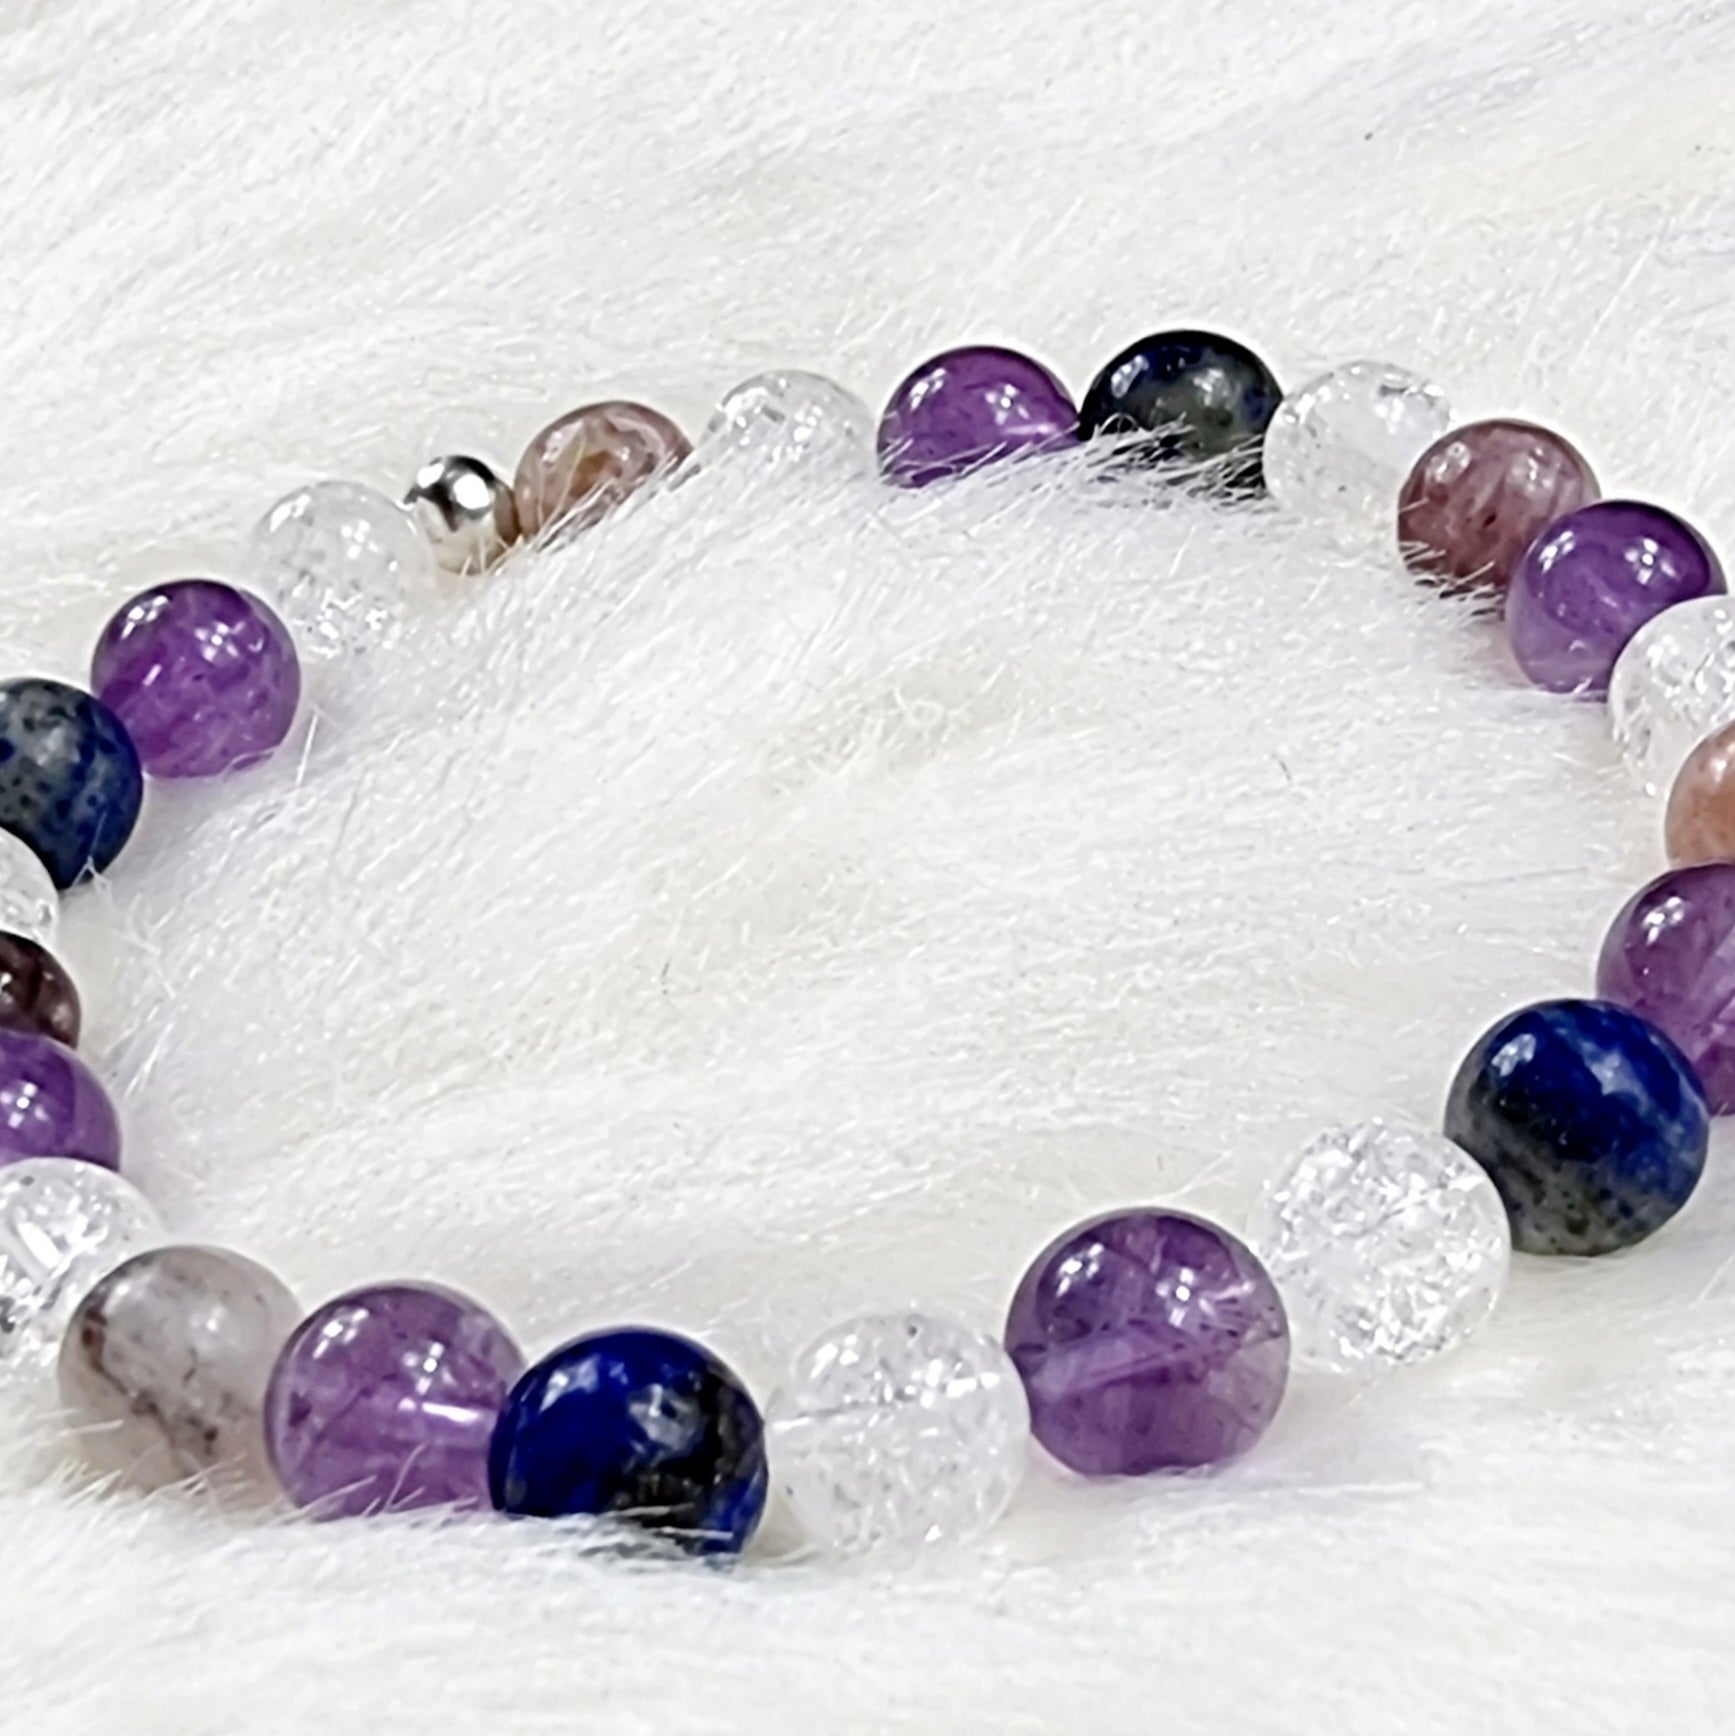 Coeur de perles, magasin spécialisé dans la création de bracelets personnalisés en pierres fines naturelles. Bracelets chemin de vie, signe astrologiques, bracelets à thèmes.